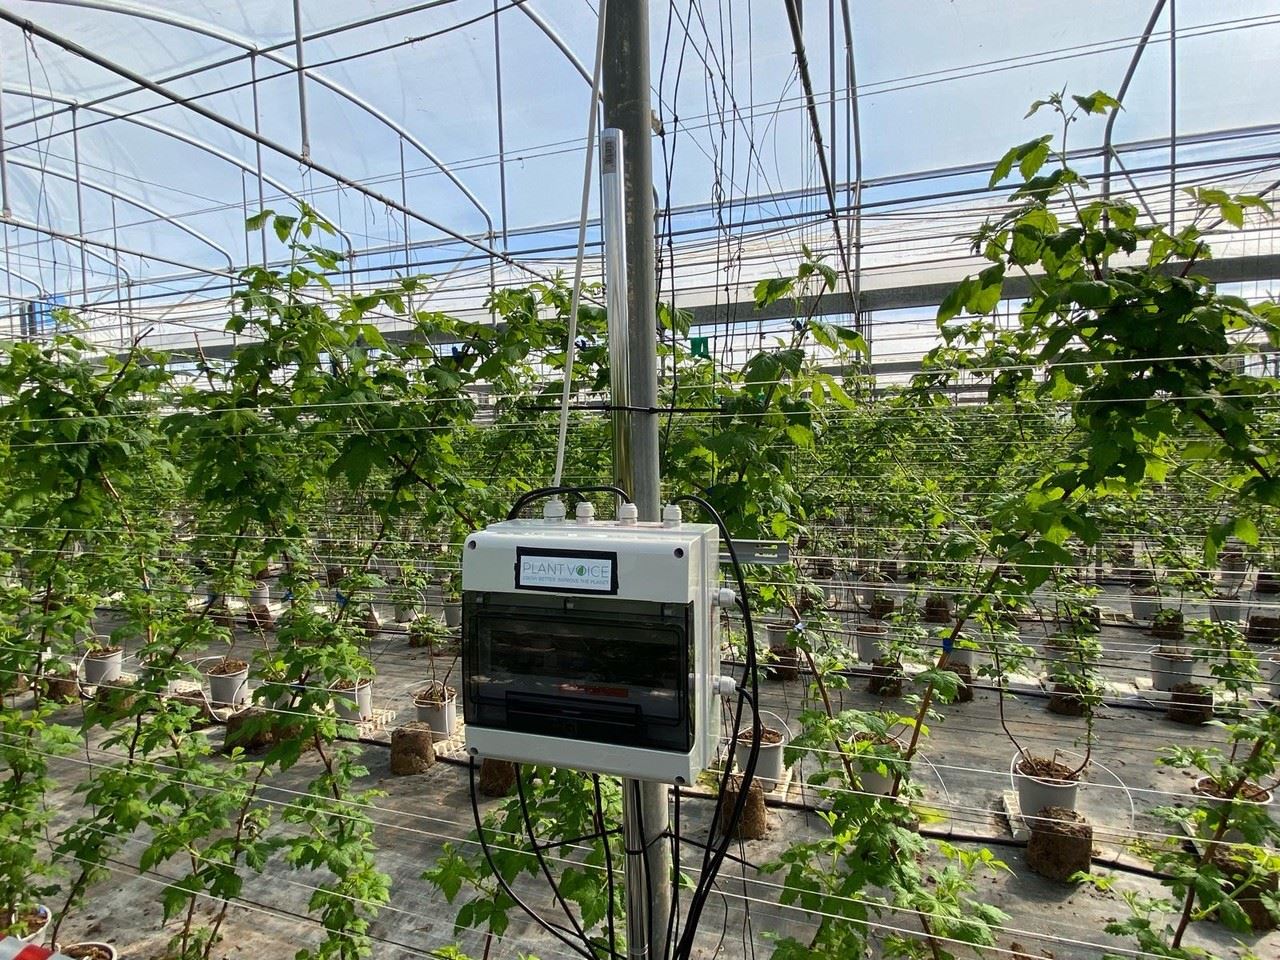 «Plantvoice», arriva il sensore che riesce a far parlare le piante